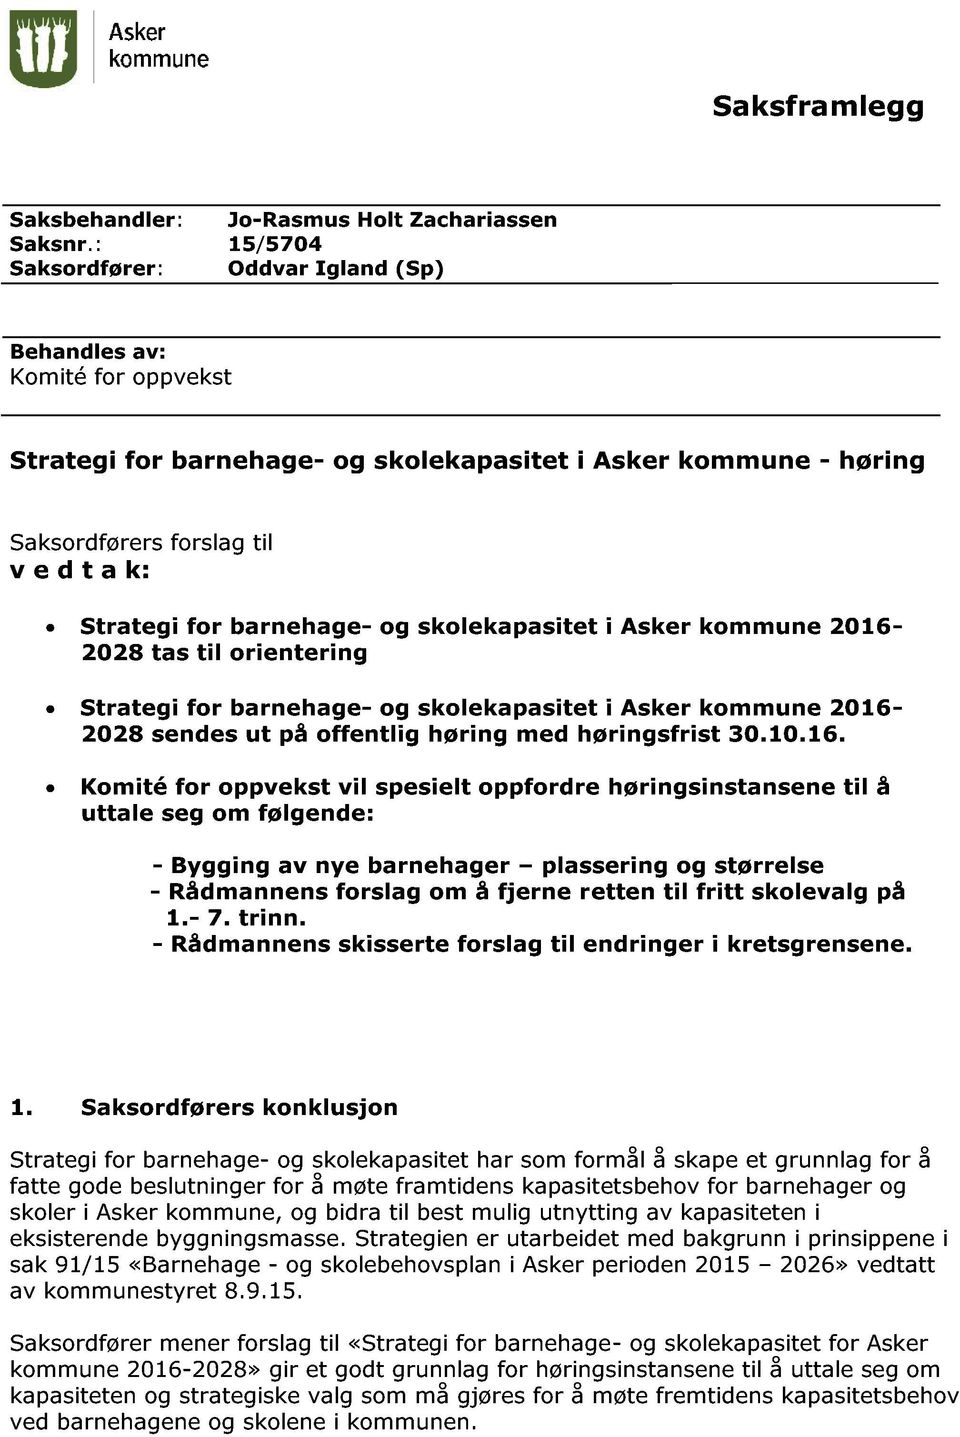 barnehage - og skolekapasitet i Asker kommune 2016-2028 tas til orientering Strategi for barnehage - og skolekapasitet i Asker kommune 2016-2028 sendes ut på offentlig høring med høringsfrist 30.10.